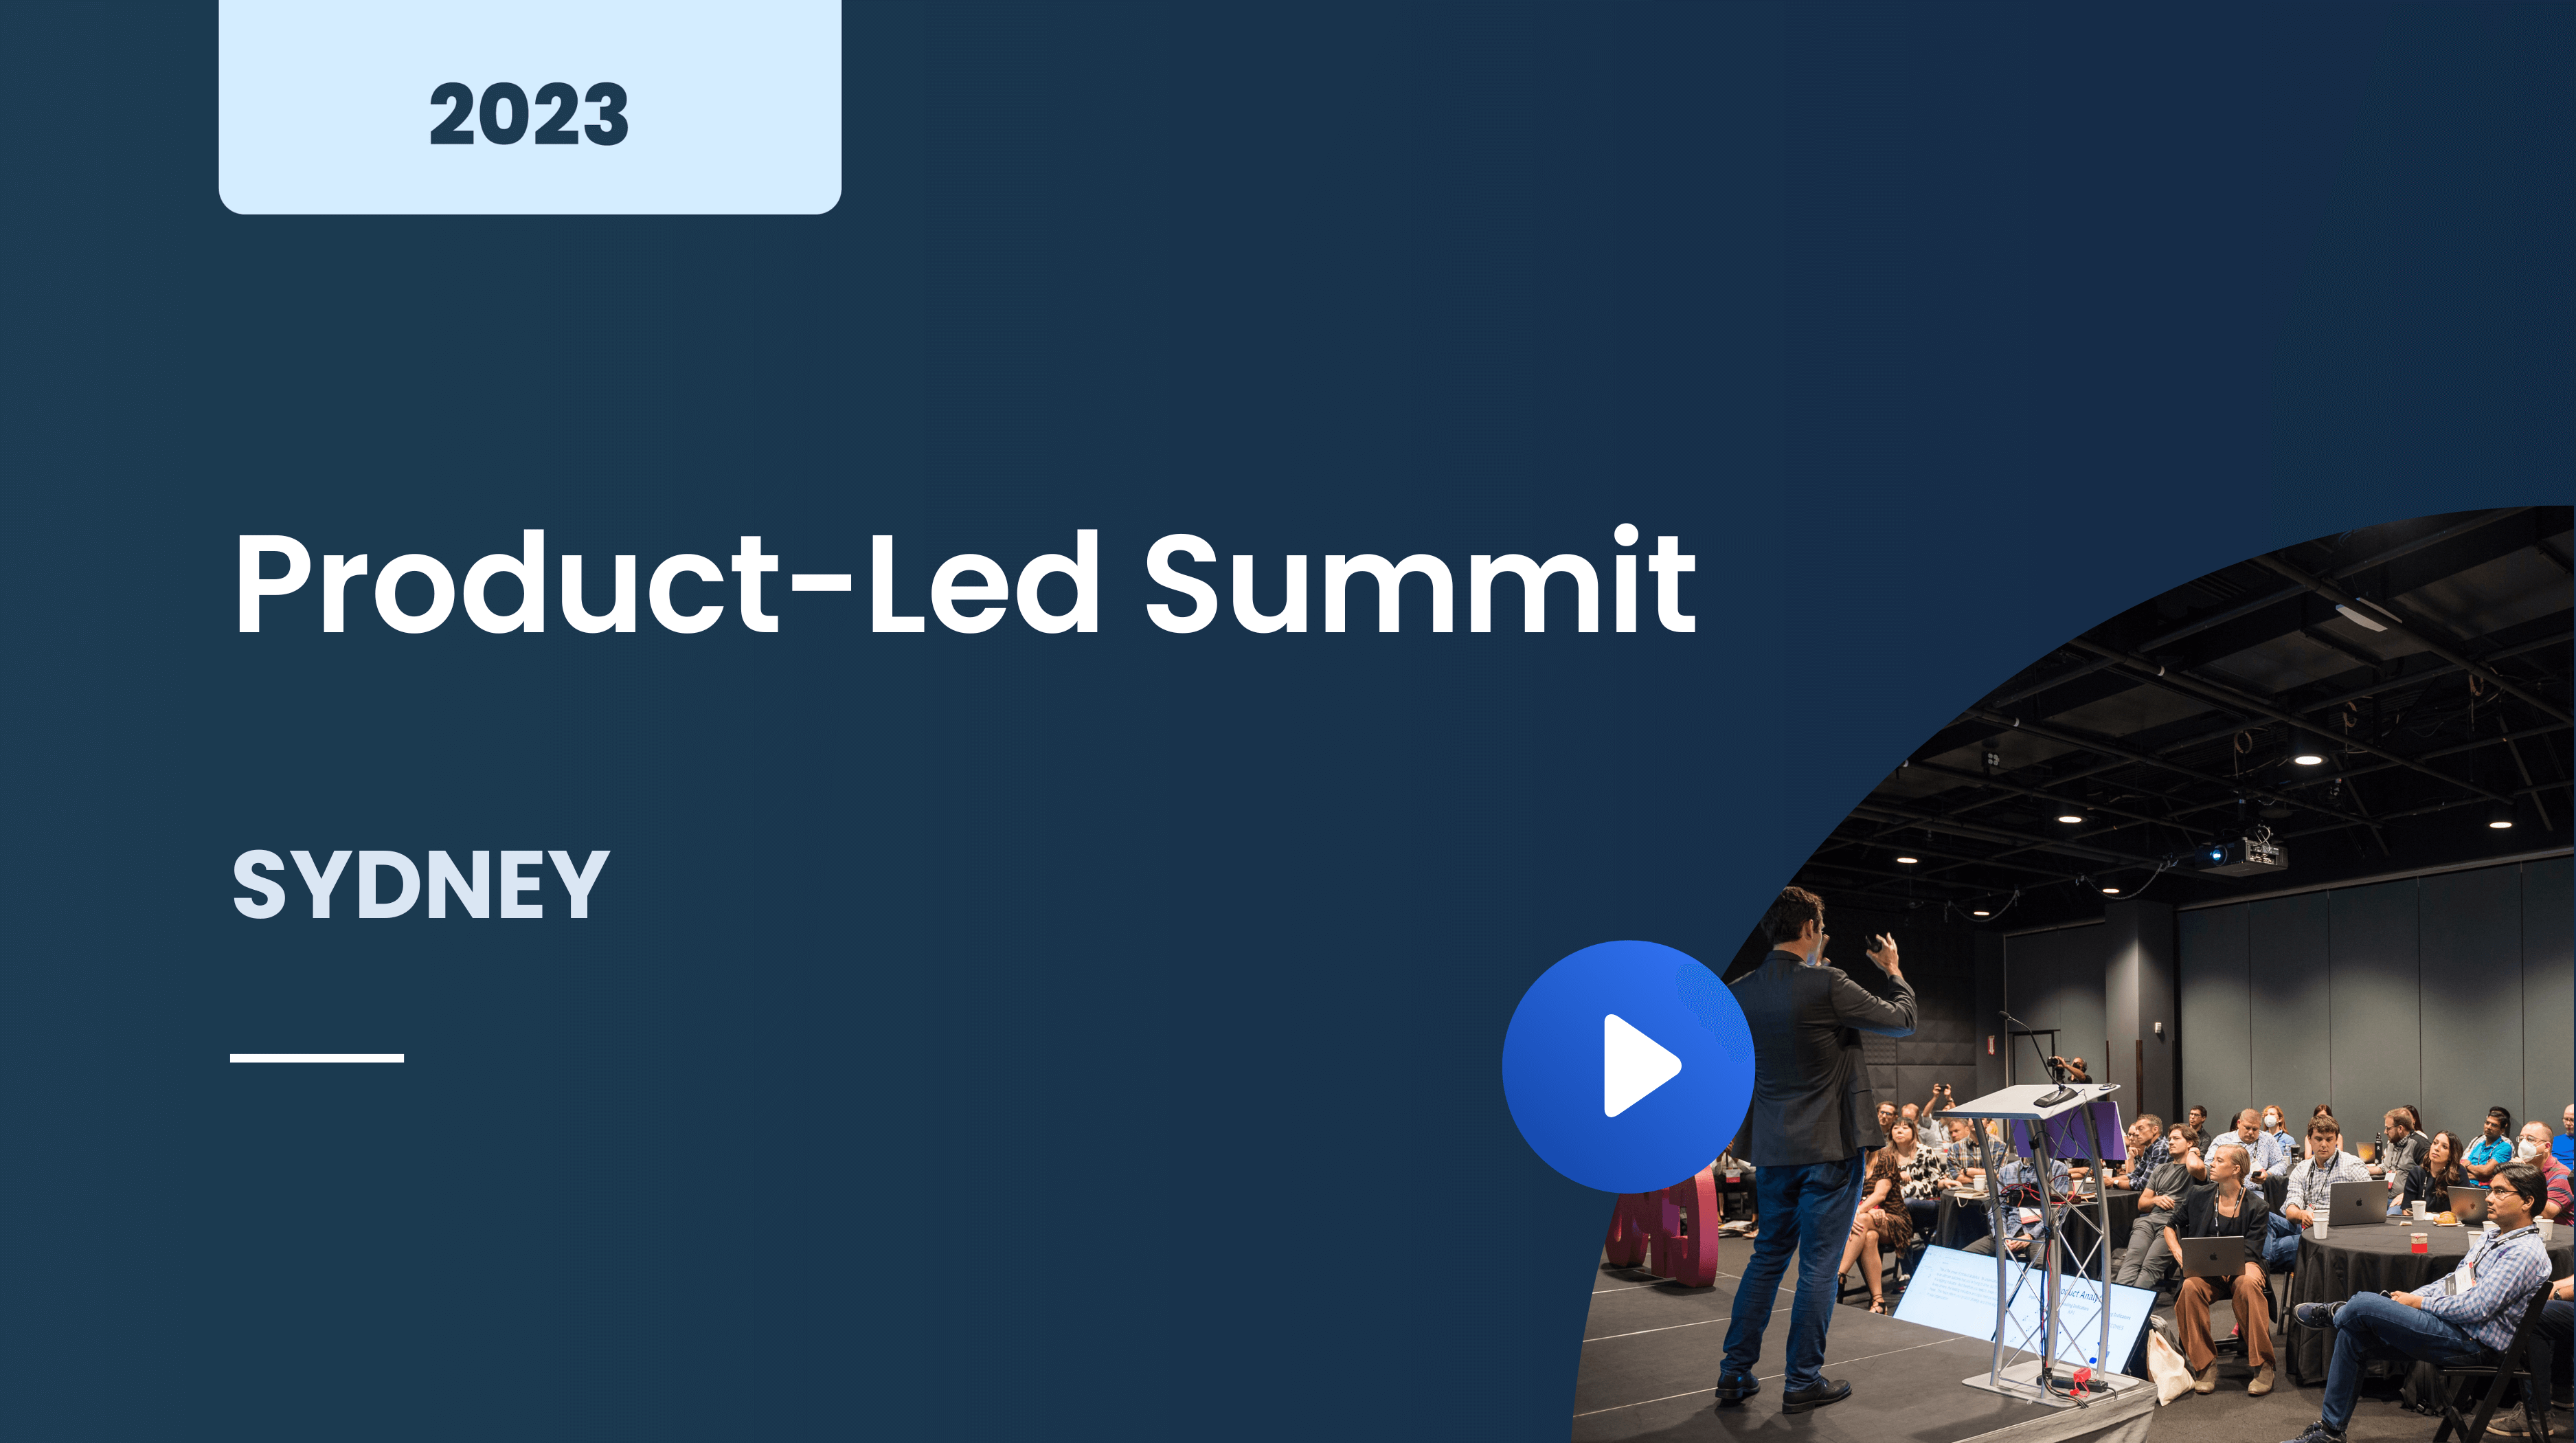 Product-Led Summit Sydney 2023